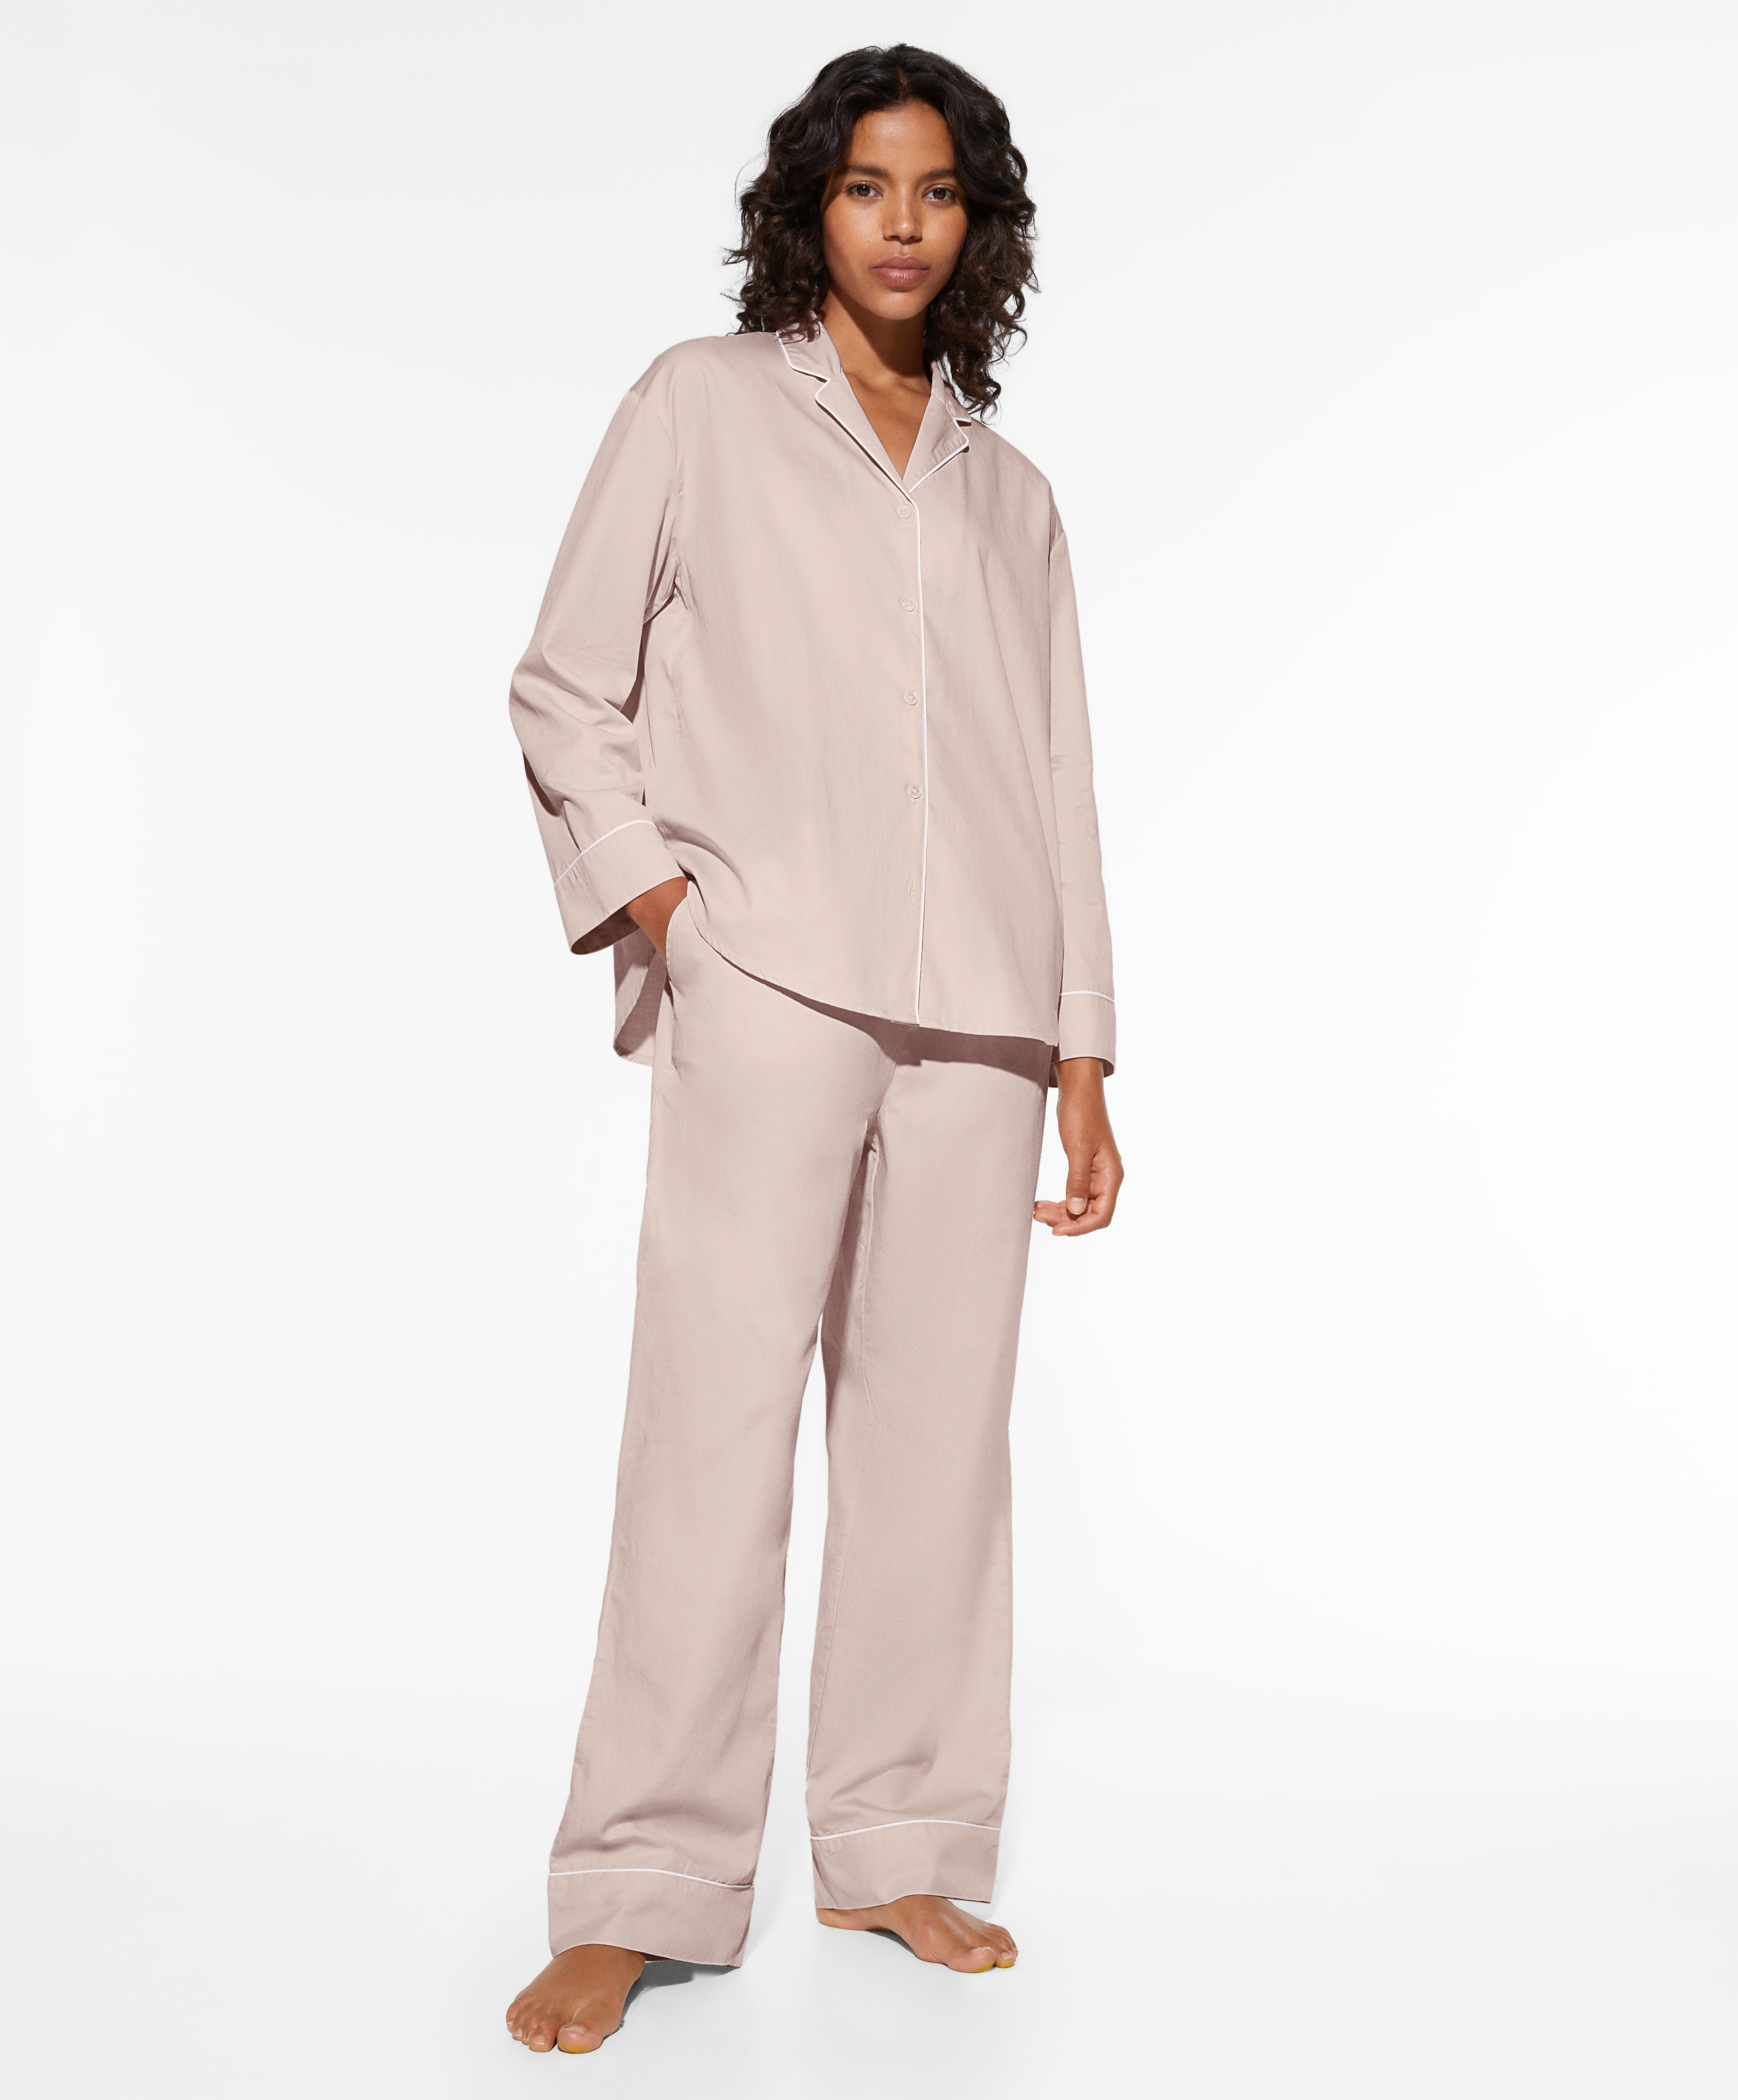 Roze lange pyjamaset van 100% katoen